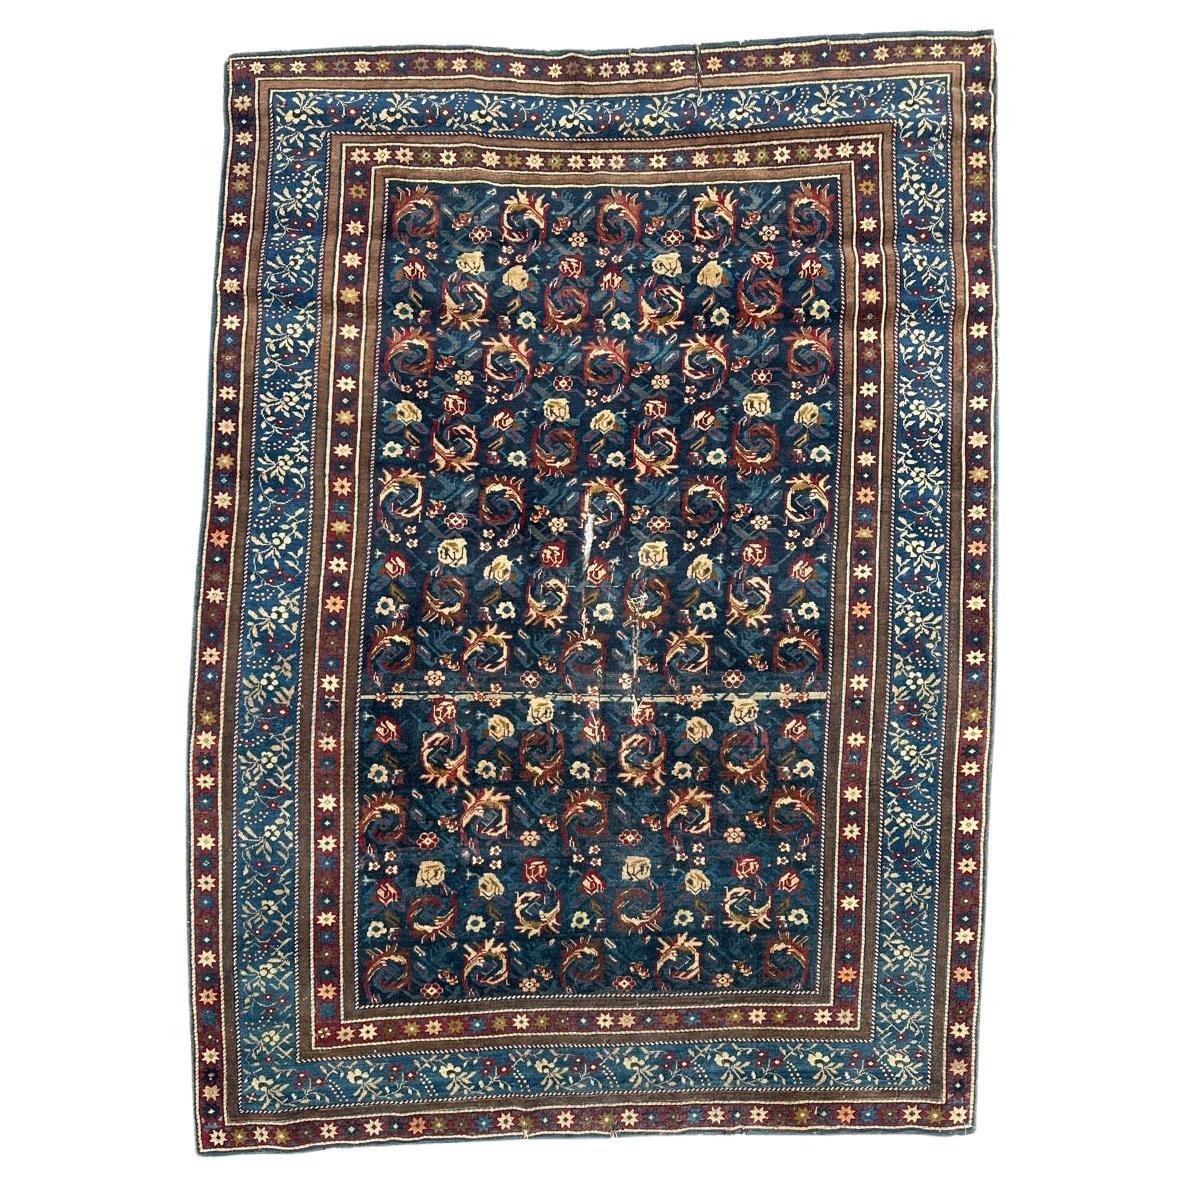 Bobyrug’s wonderful antique rare Caucasian Karabagh rug For Sale